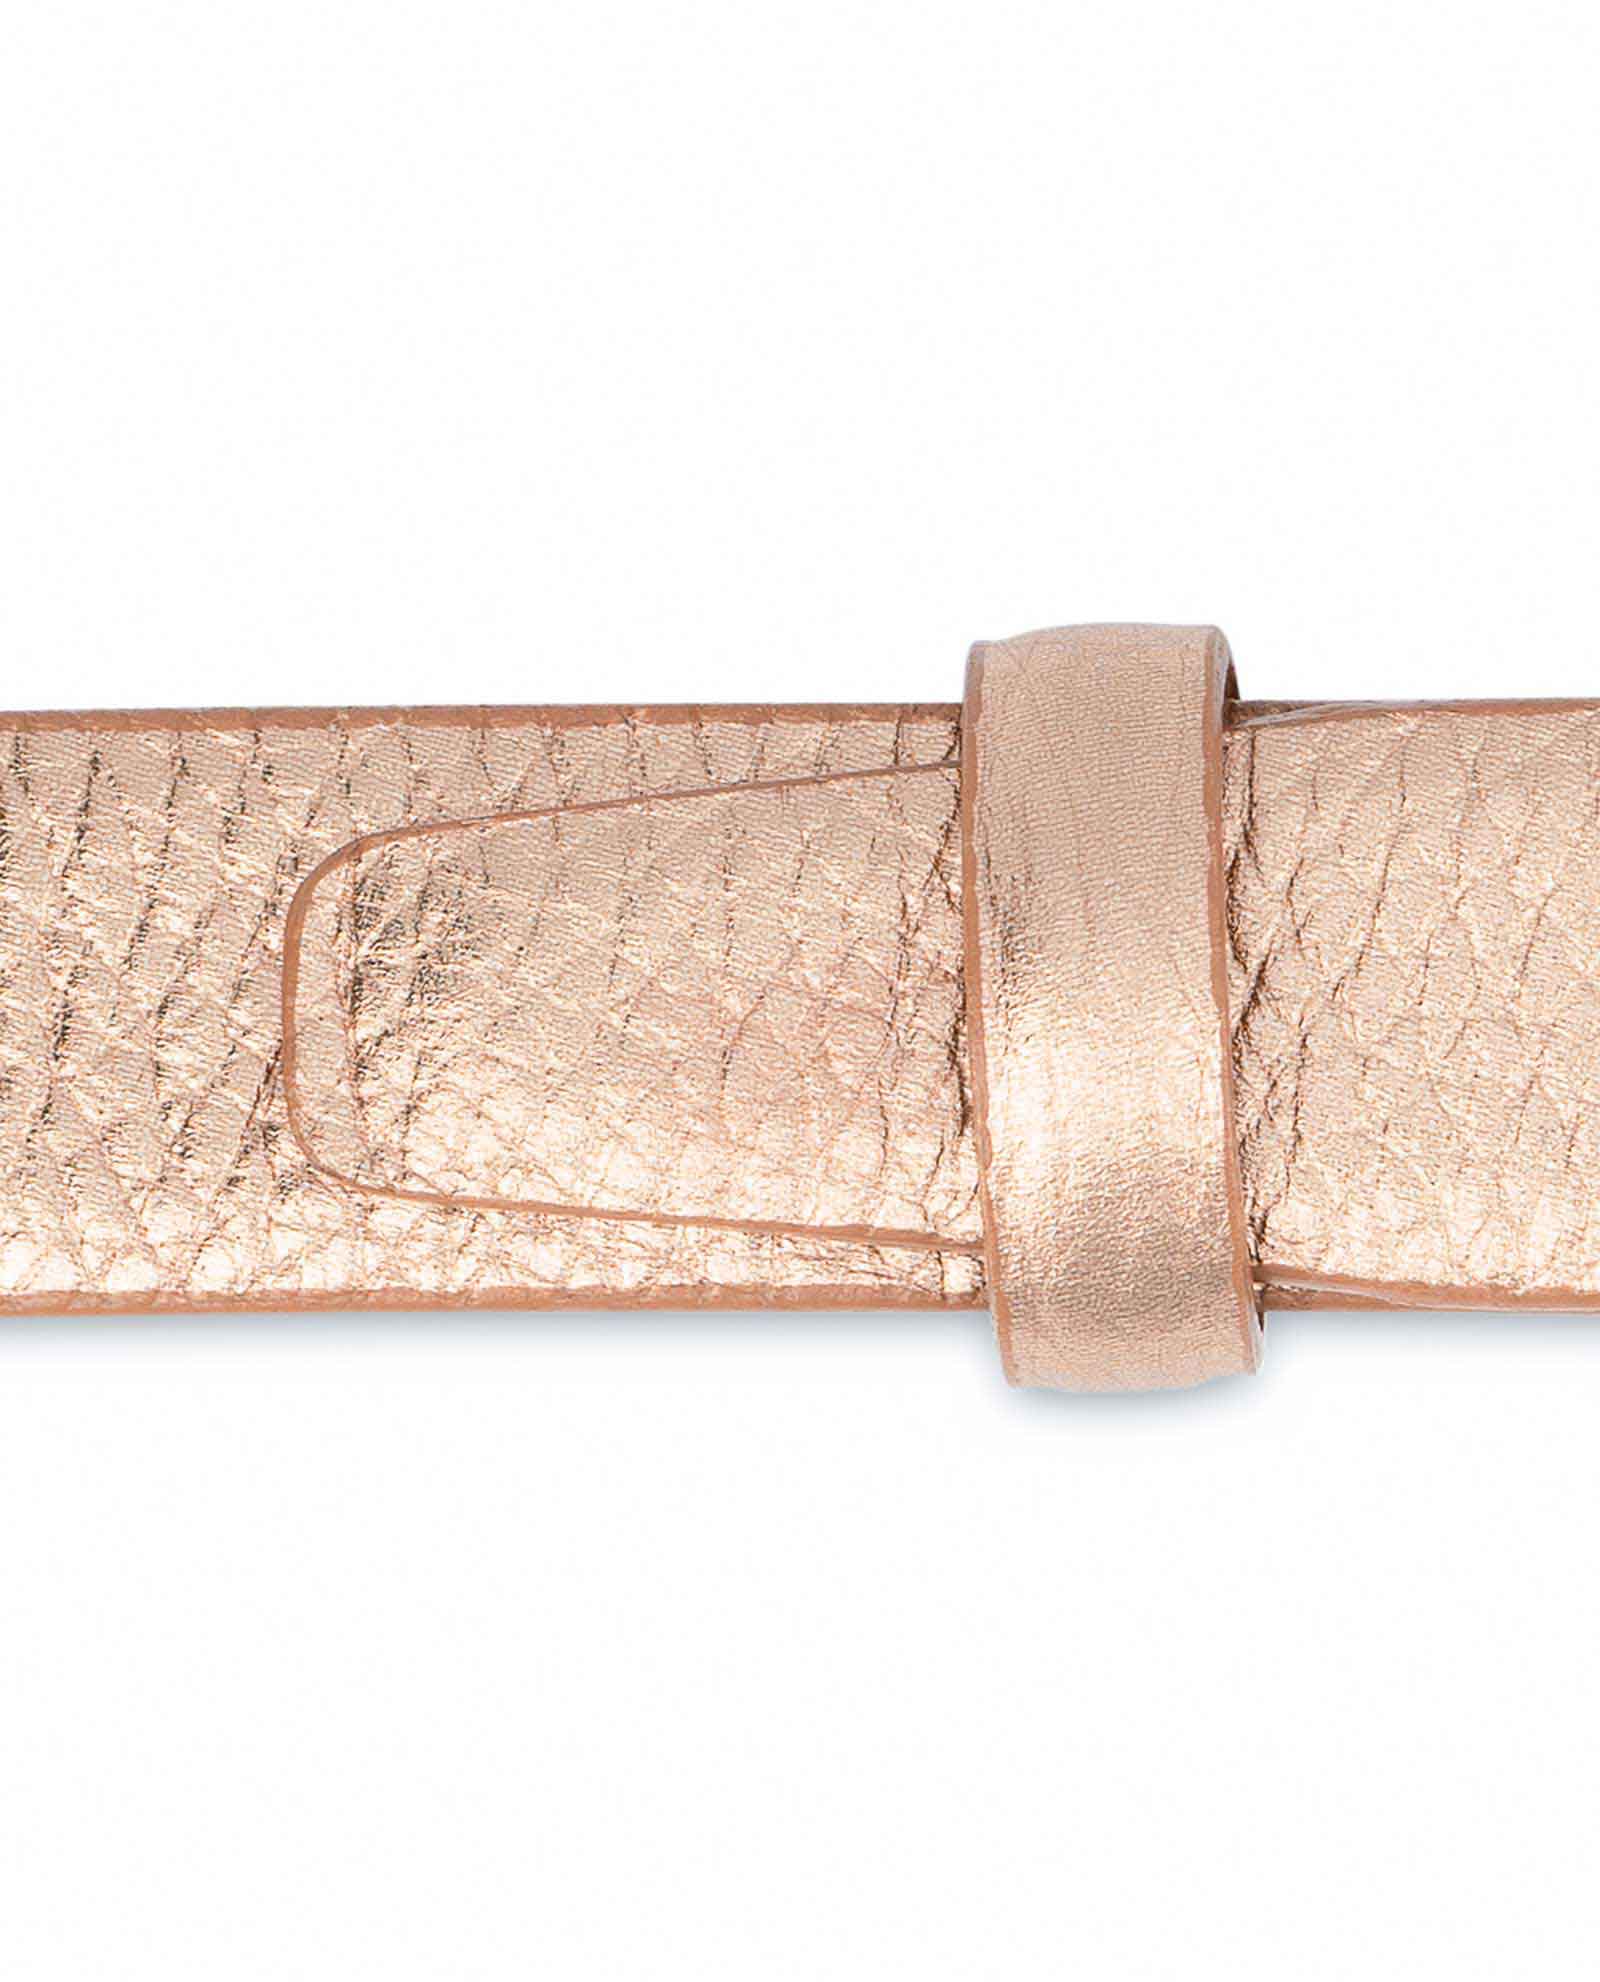 Buy Rose Gold Belt for Dress | LeatherBeltsOnline.com